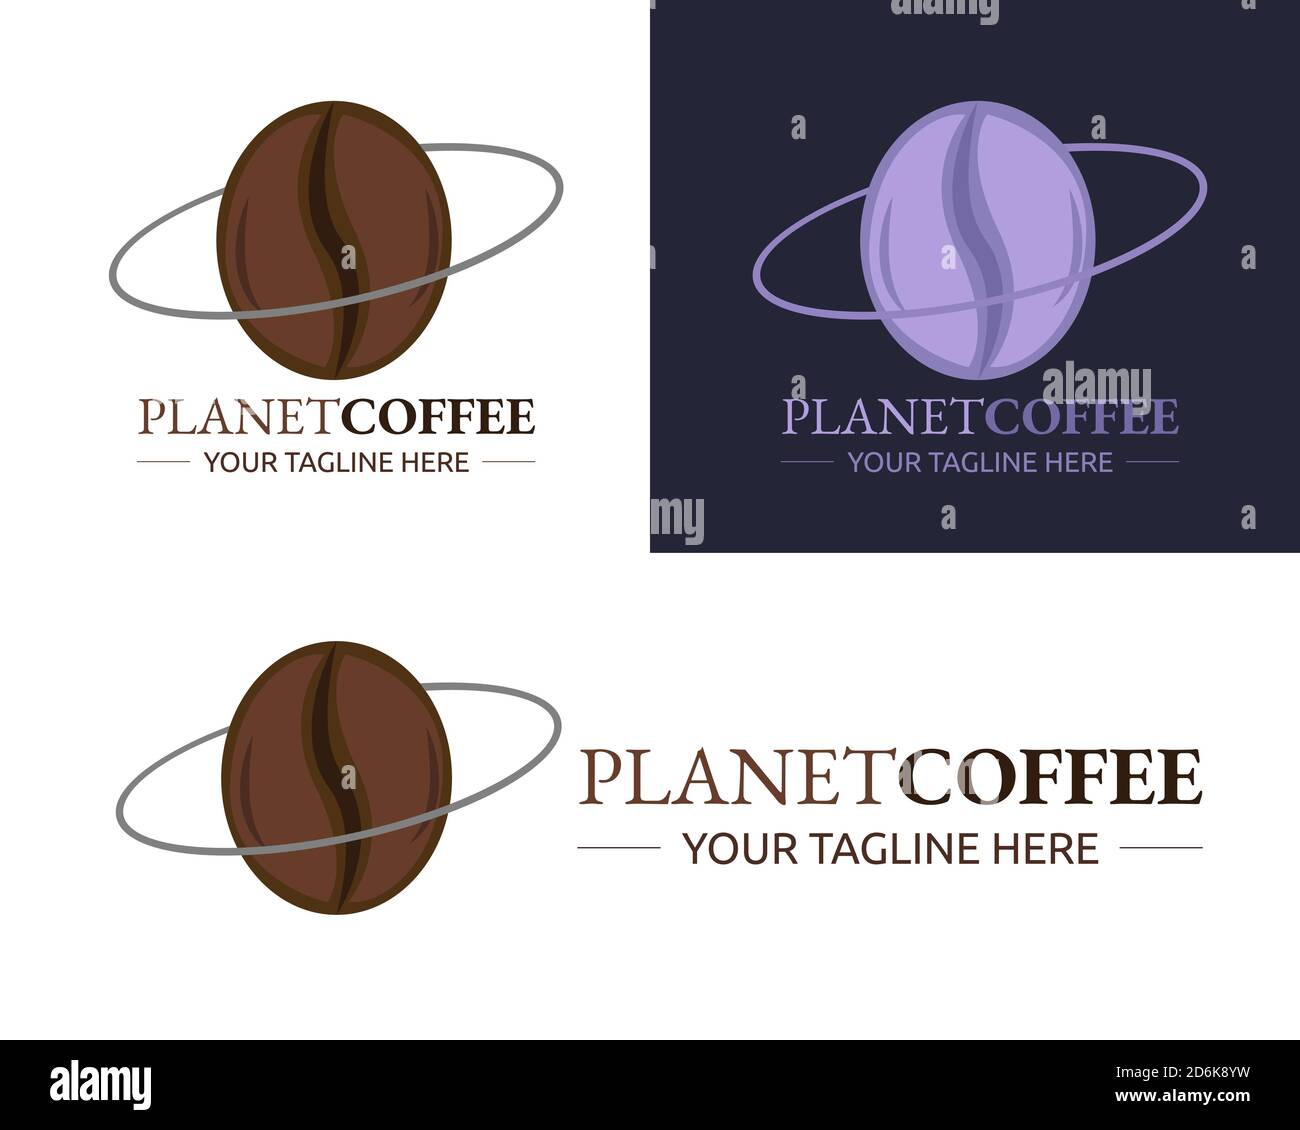 Illustration de la conception vectorielle du modèle de logo Planet Coffee pour les entreprises ou société Illustration de Vecteur